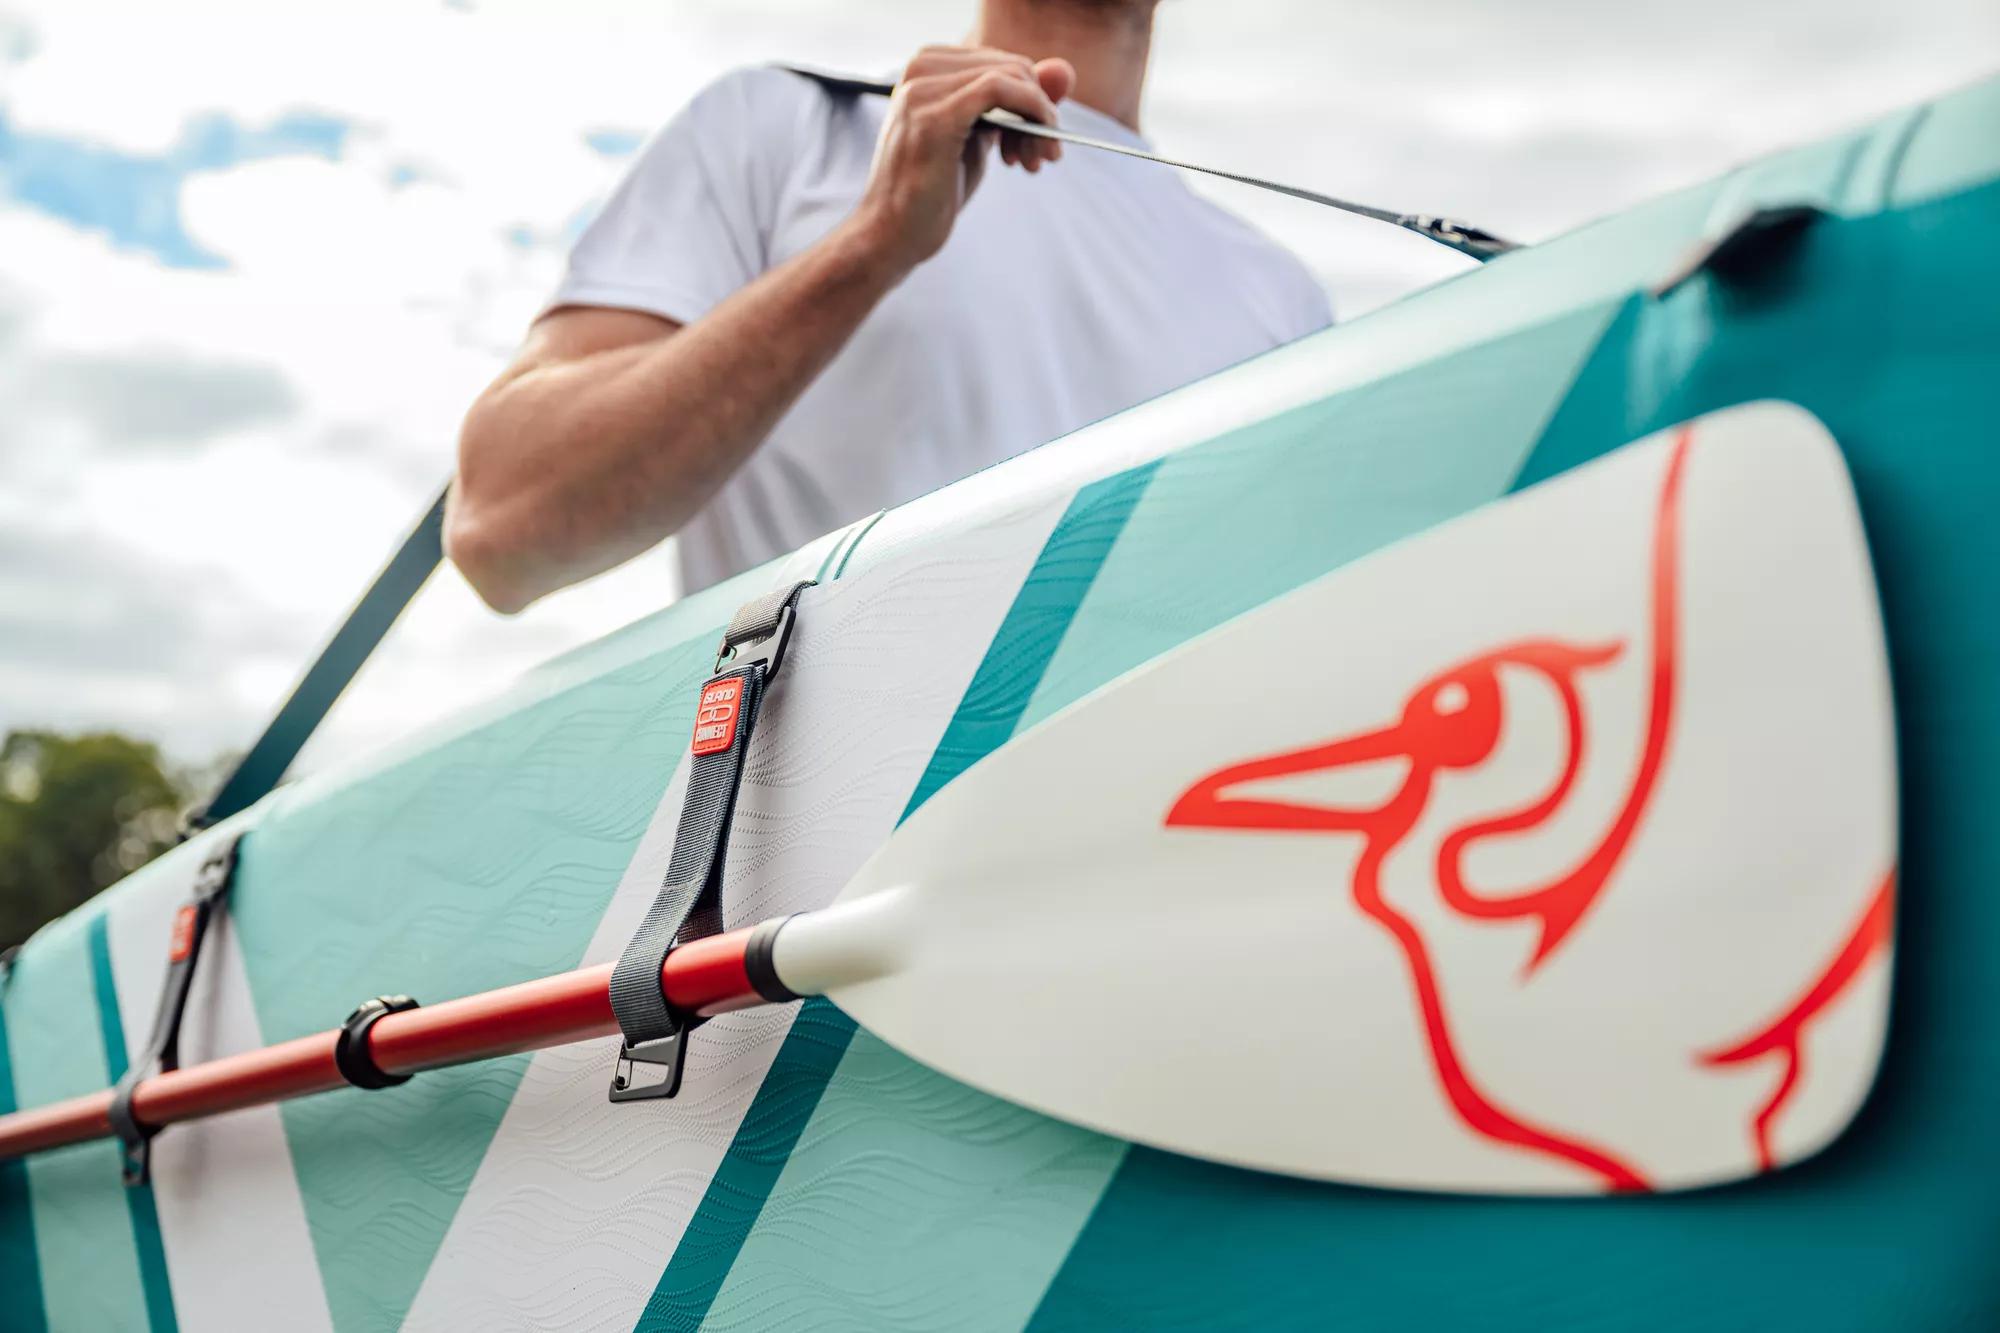 Planche récréatif gonflable Loungeboard de Pelican